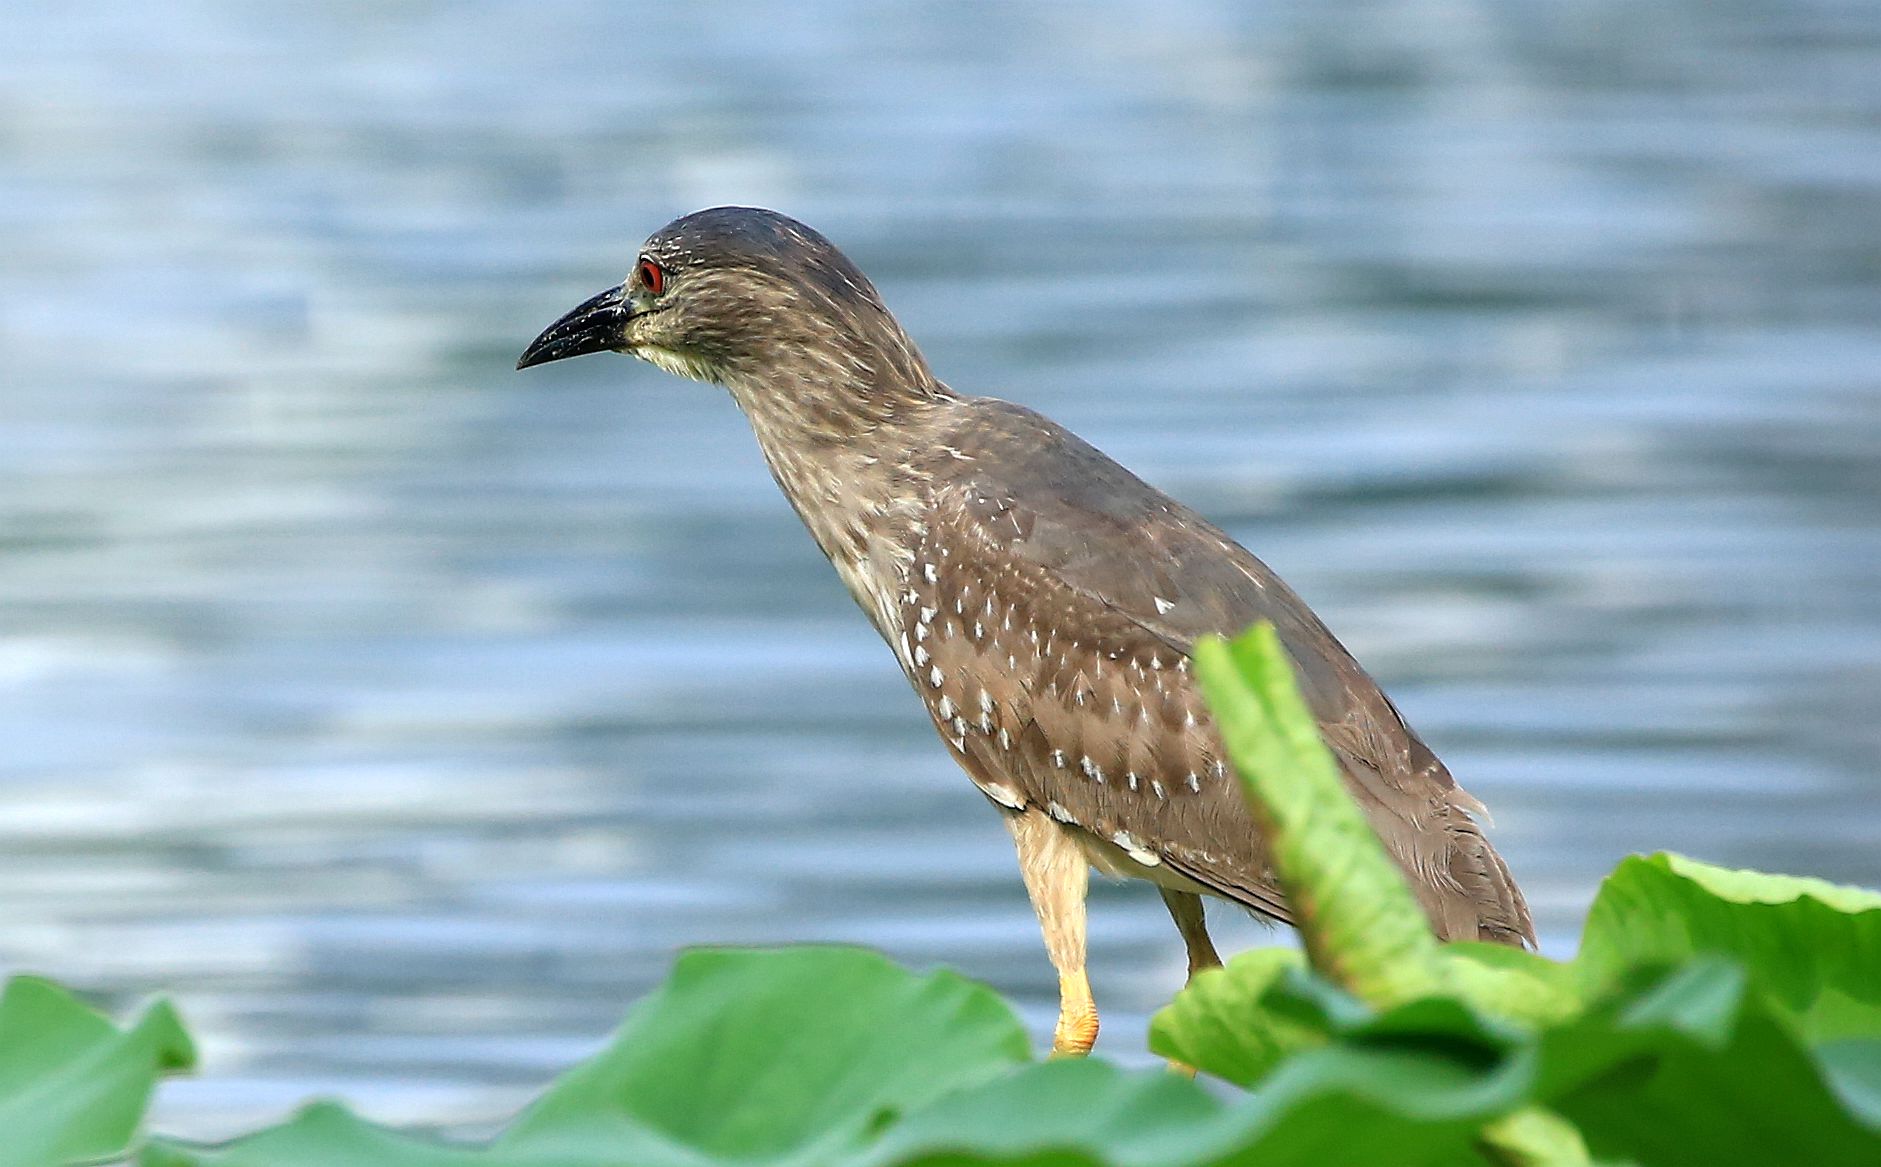 含全部种类的湿地水鸟潜鸟目,䴙鷉目(piti),鹳形目,雁形目,鸻形目